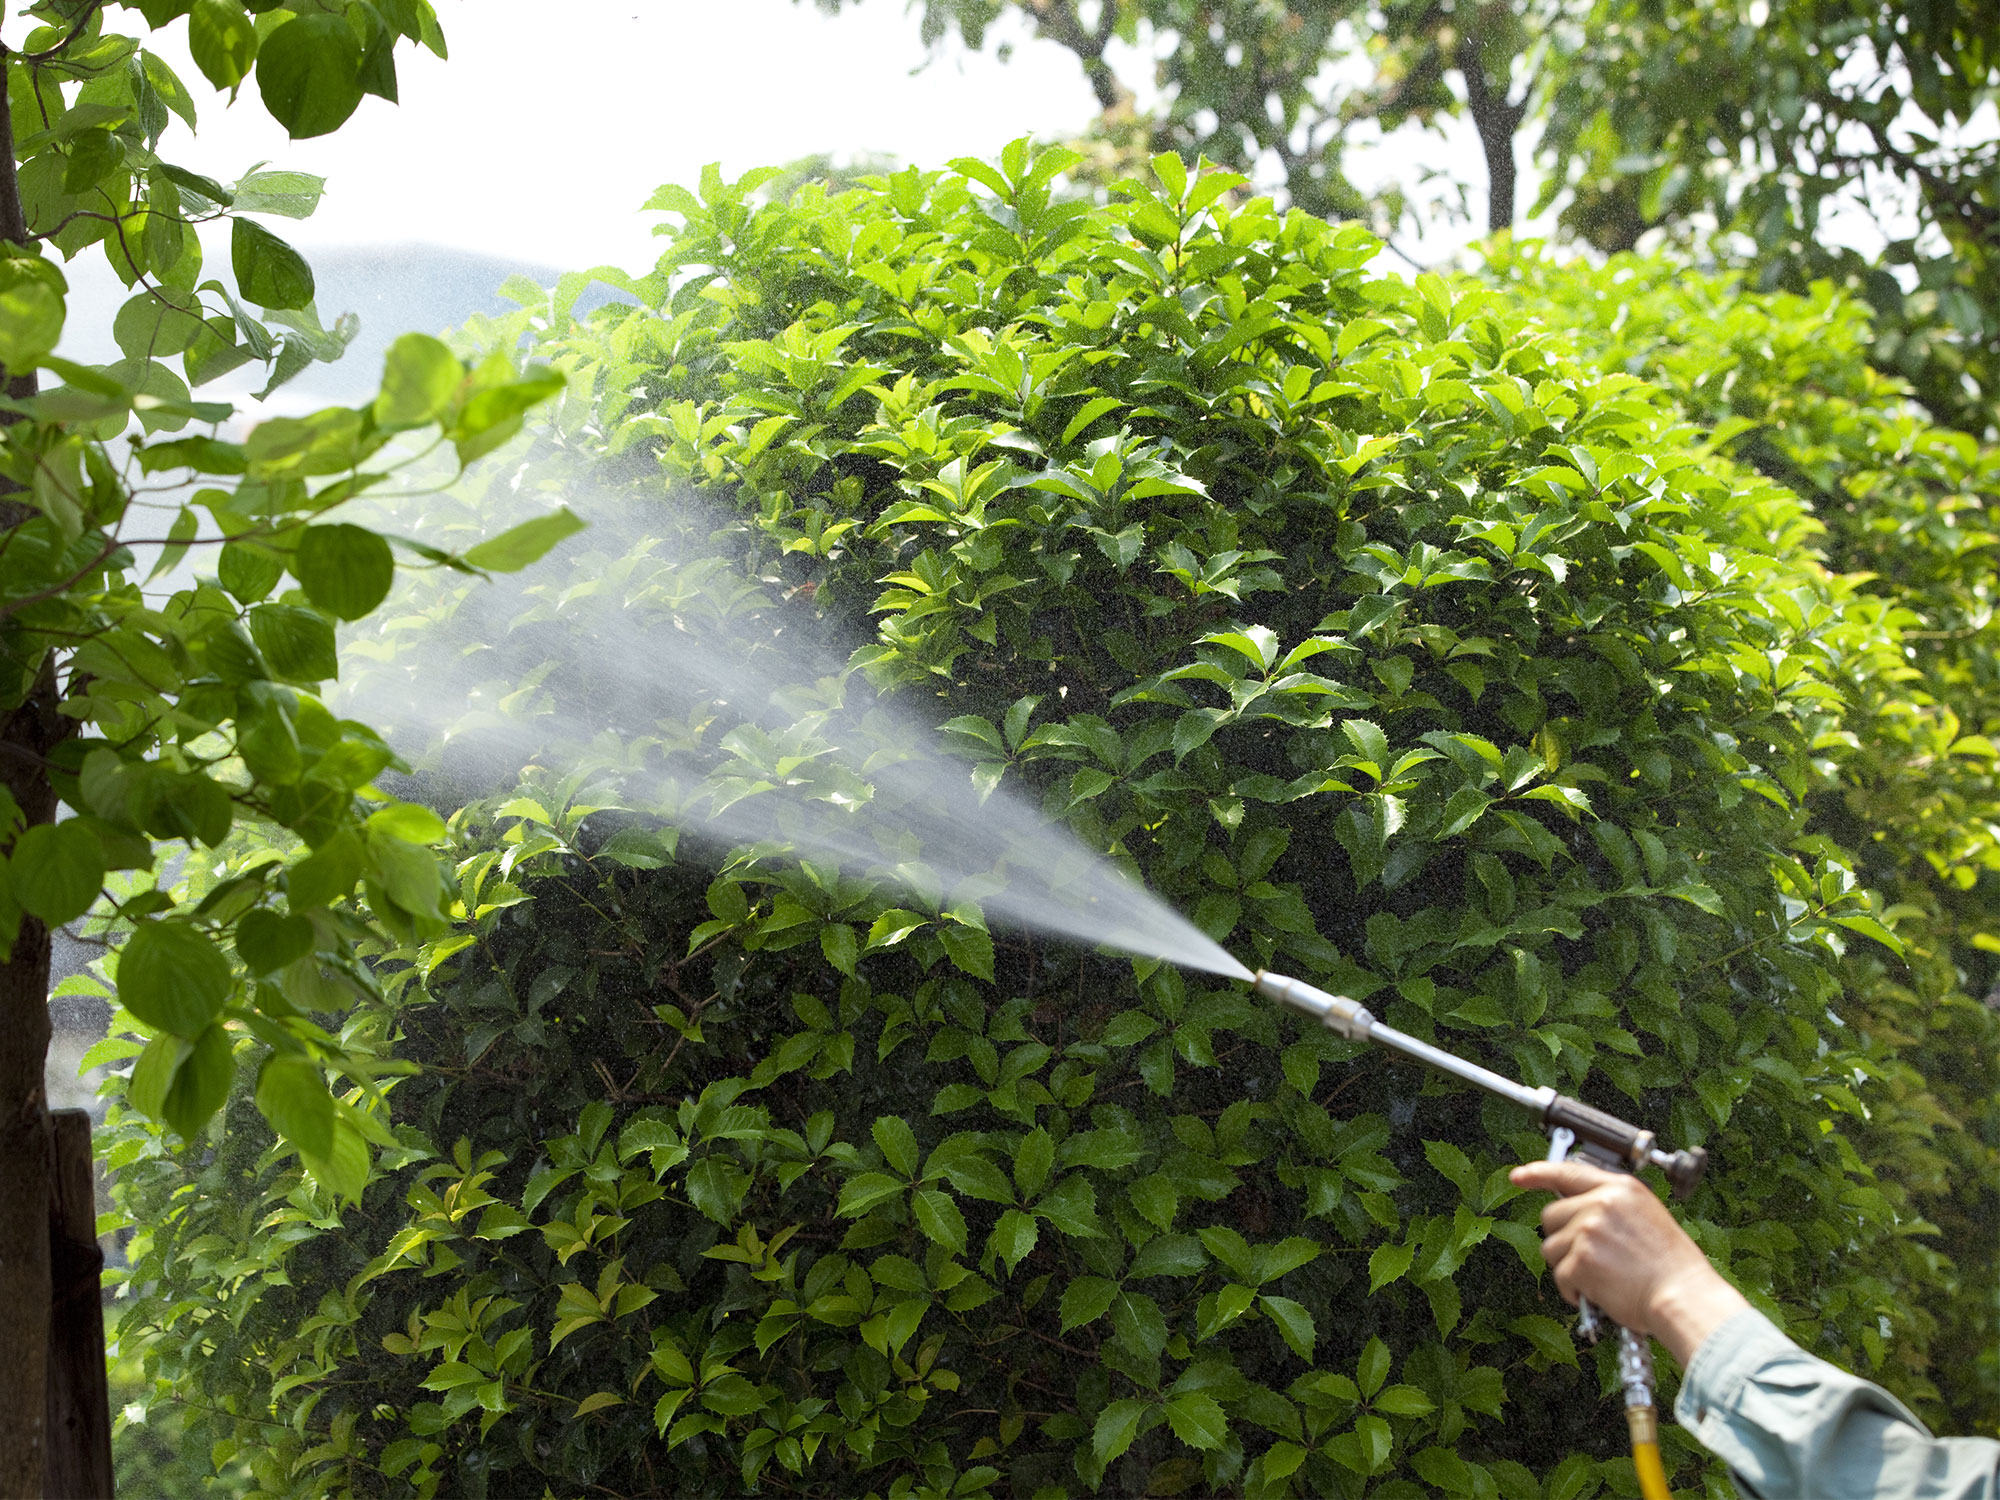 spraying fertilizer on a tree